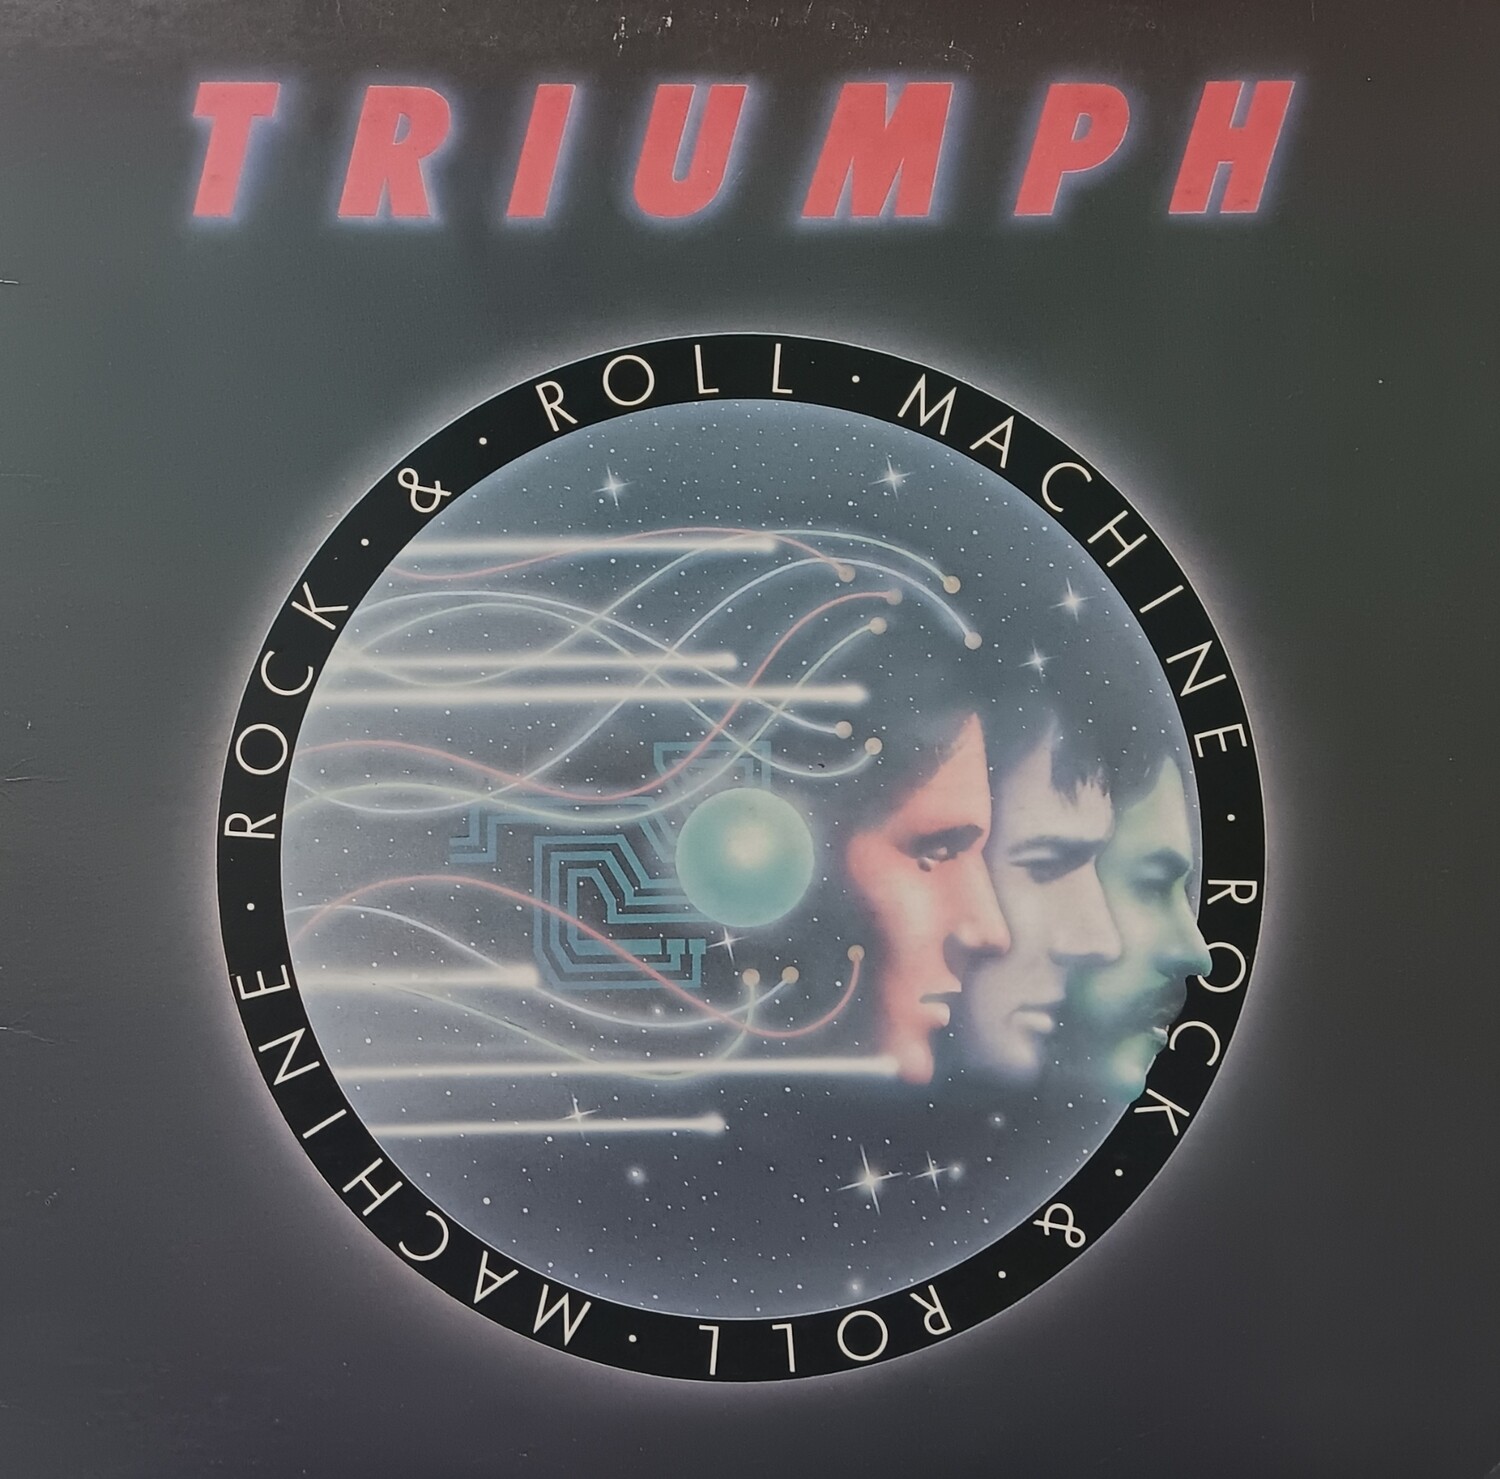 Triumph - Rock and roll machine